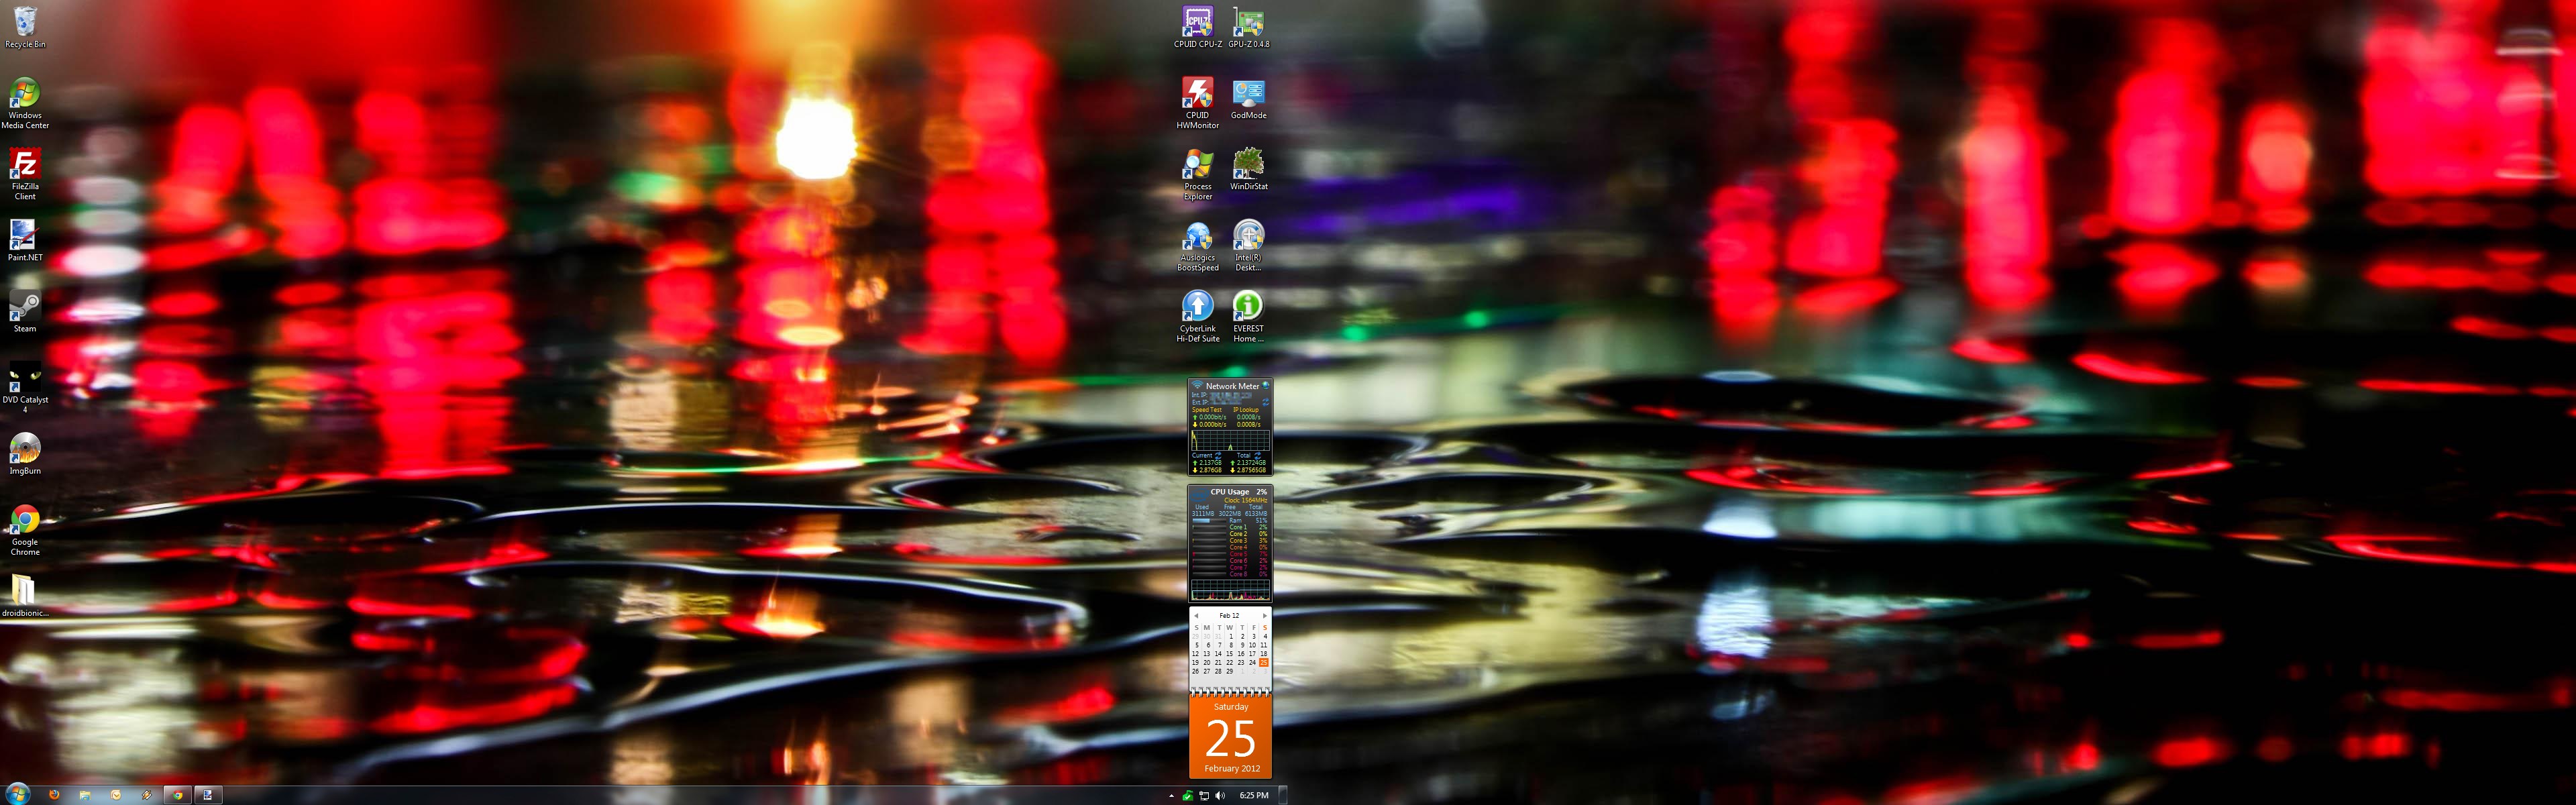 desktop%202-2012.jpg